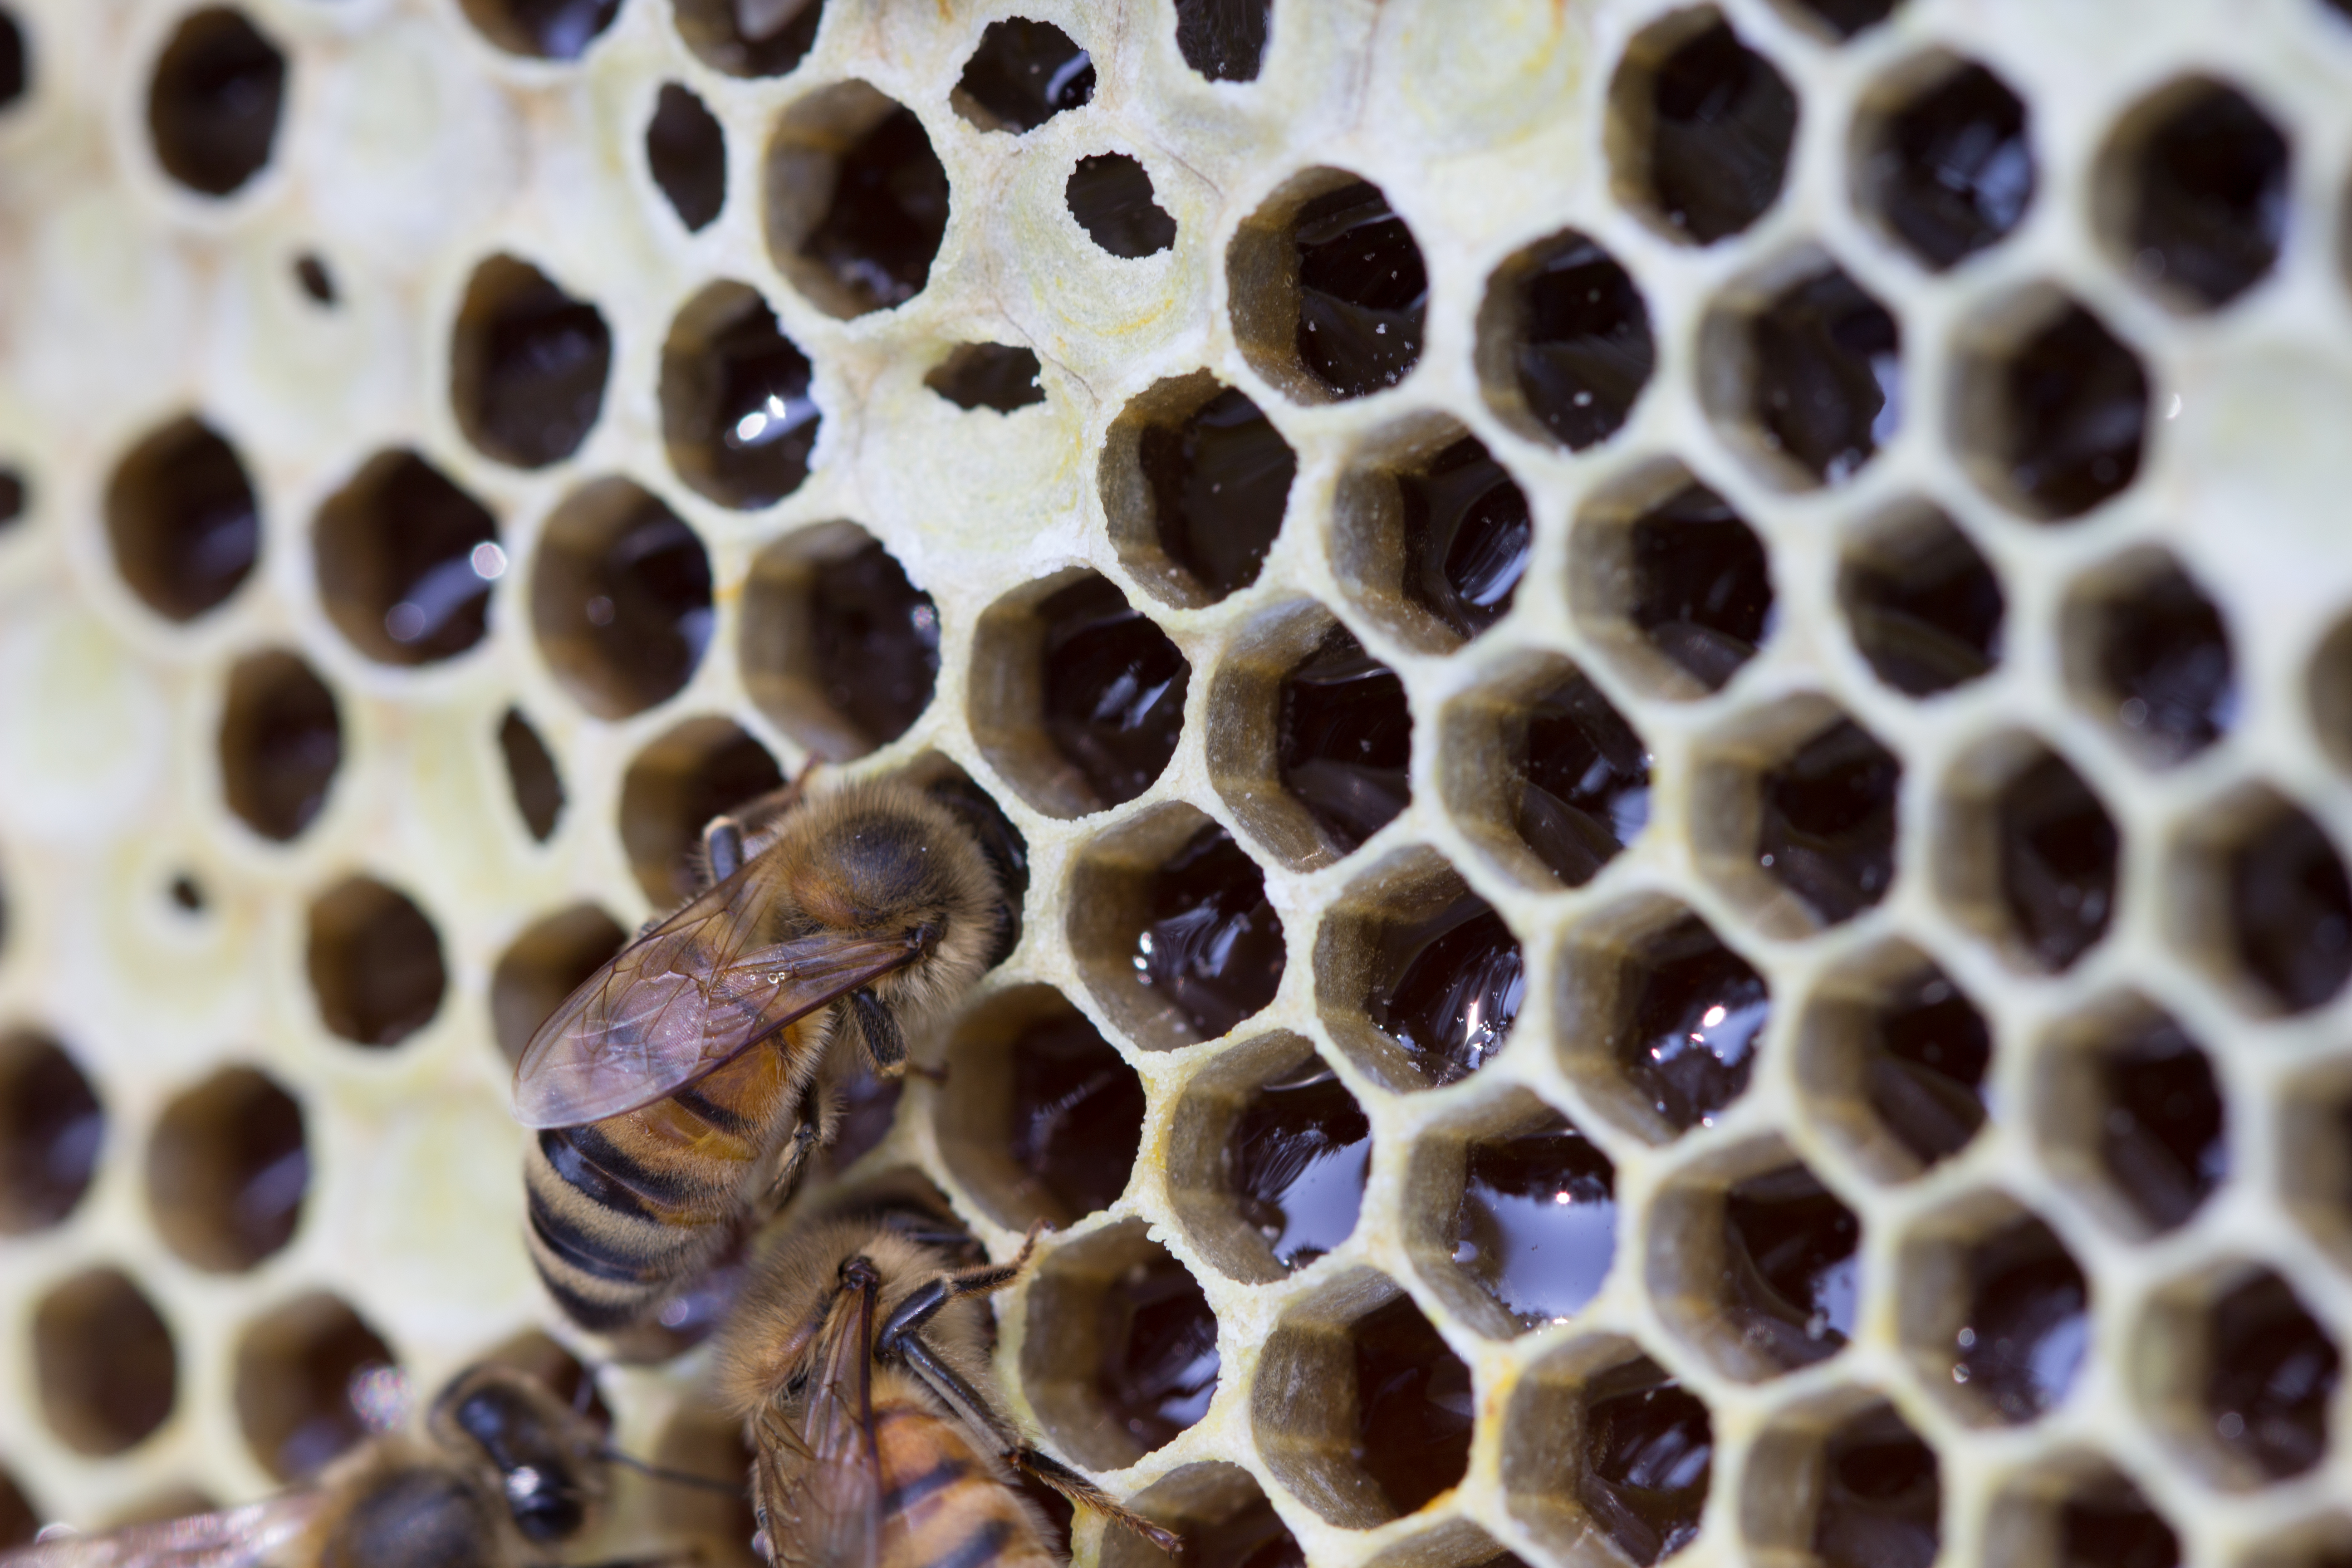 Hoe maken bijen honing?